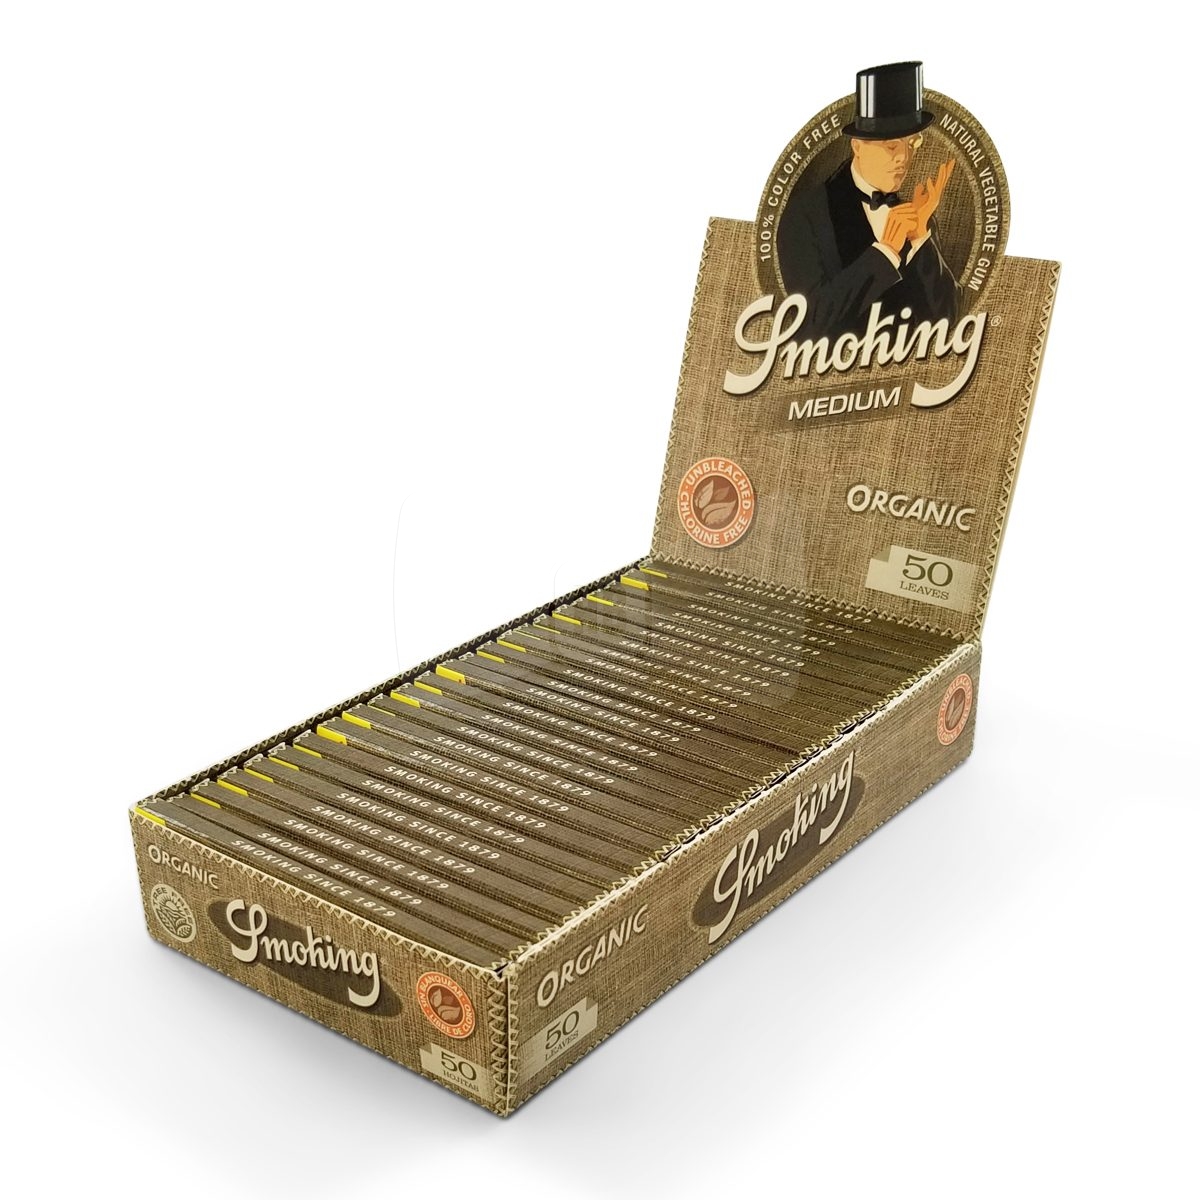 Smoking Organic 1 1/4 Full Box (25 Packs)